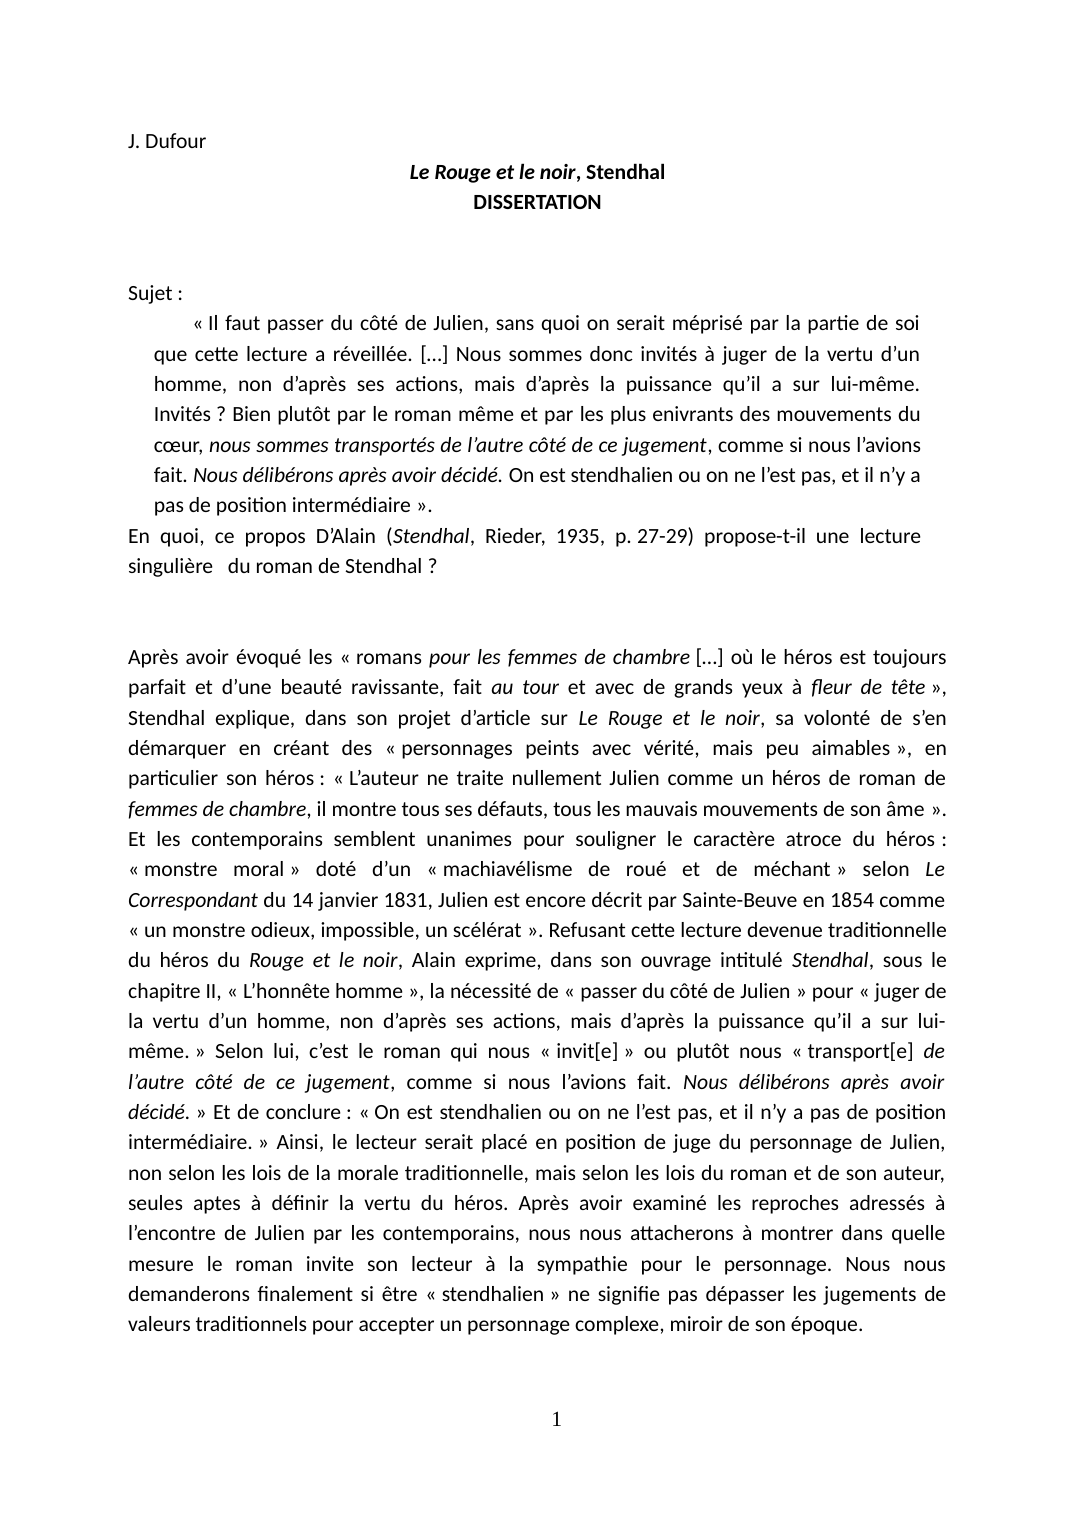 Prévisualisation du document En quoi, ce propos D’Alain (Stendhal, Rieder, 1935, p. 27-29) propose-t-il une lecture singulière du roman de Stendhal ?